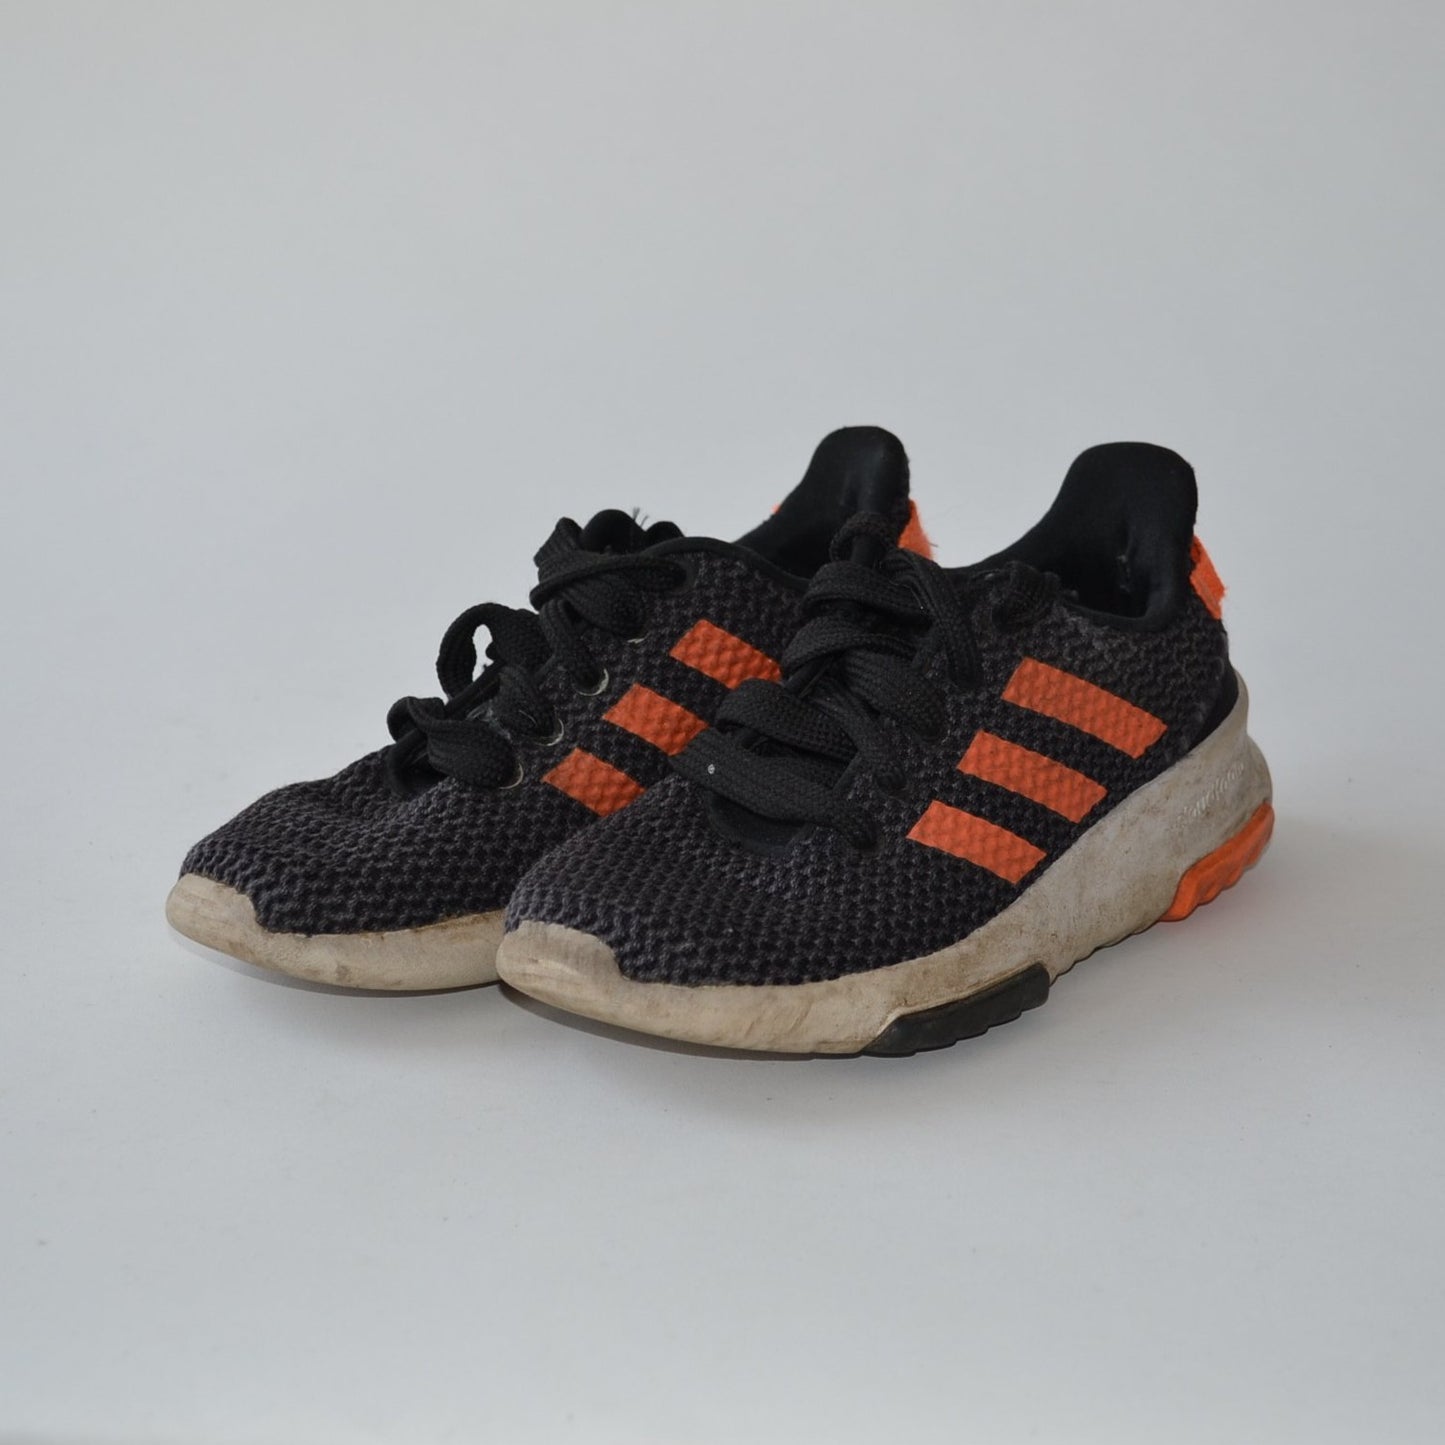 Trainers - Black & Orange - Shoe Size 13 (jr)